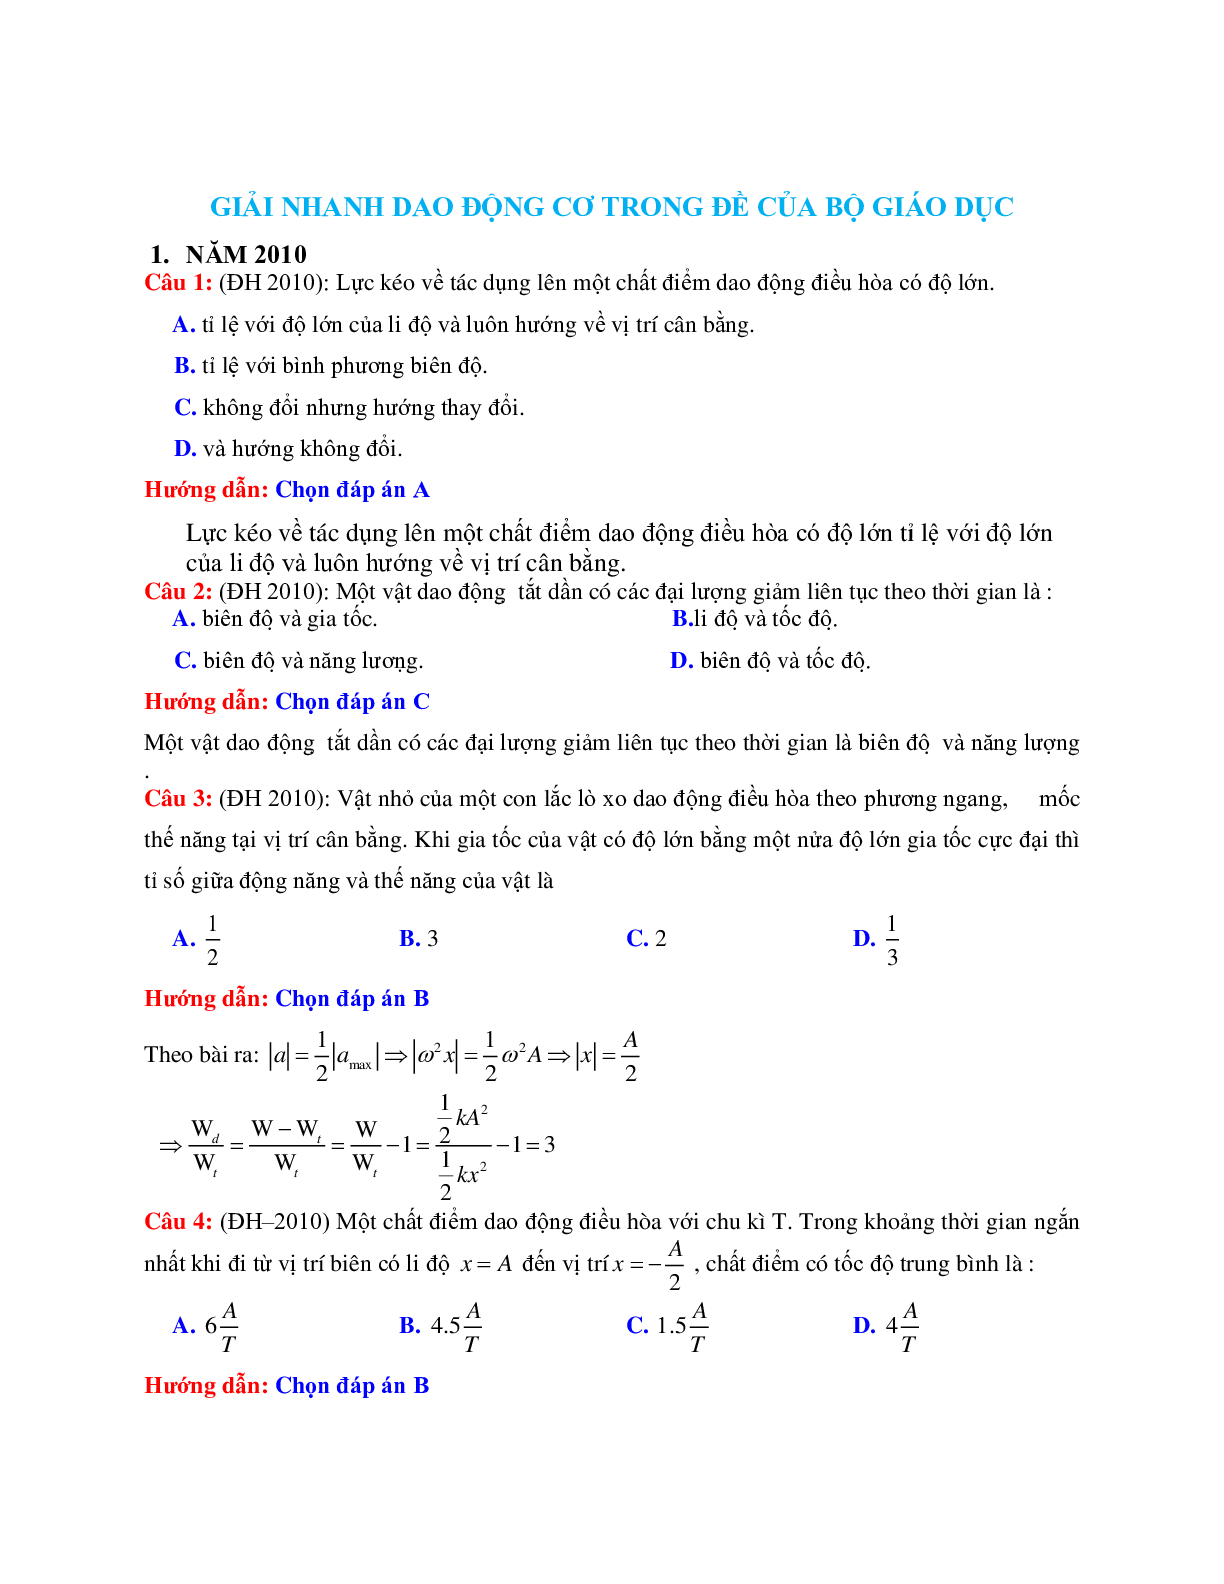 Giải nhanh chuyên đề Dao động cơ môn Vật lý lớp 12 (trang 1)